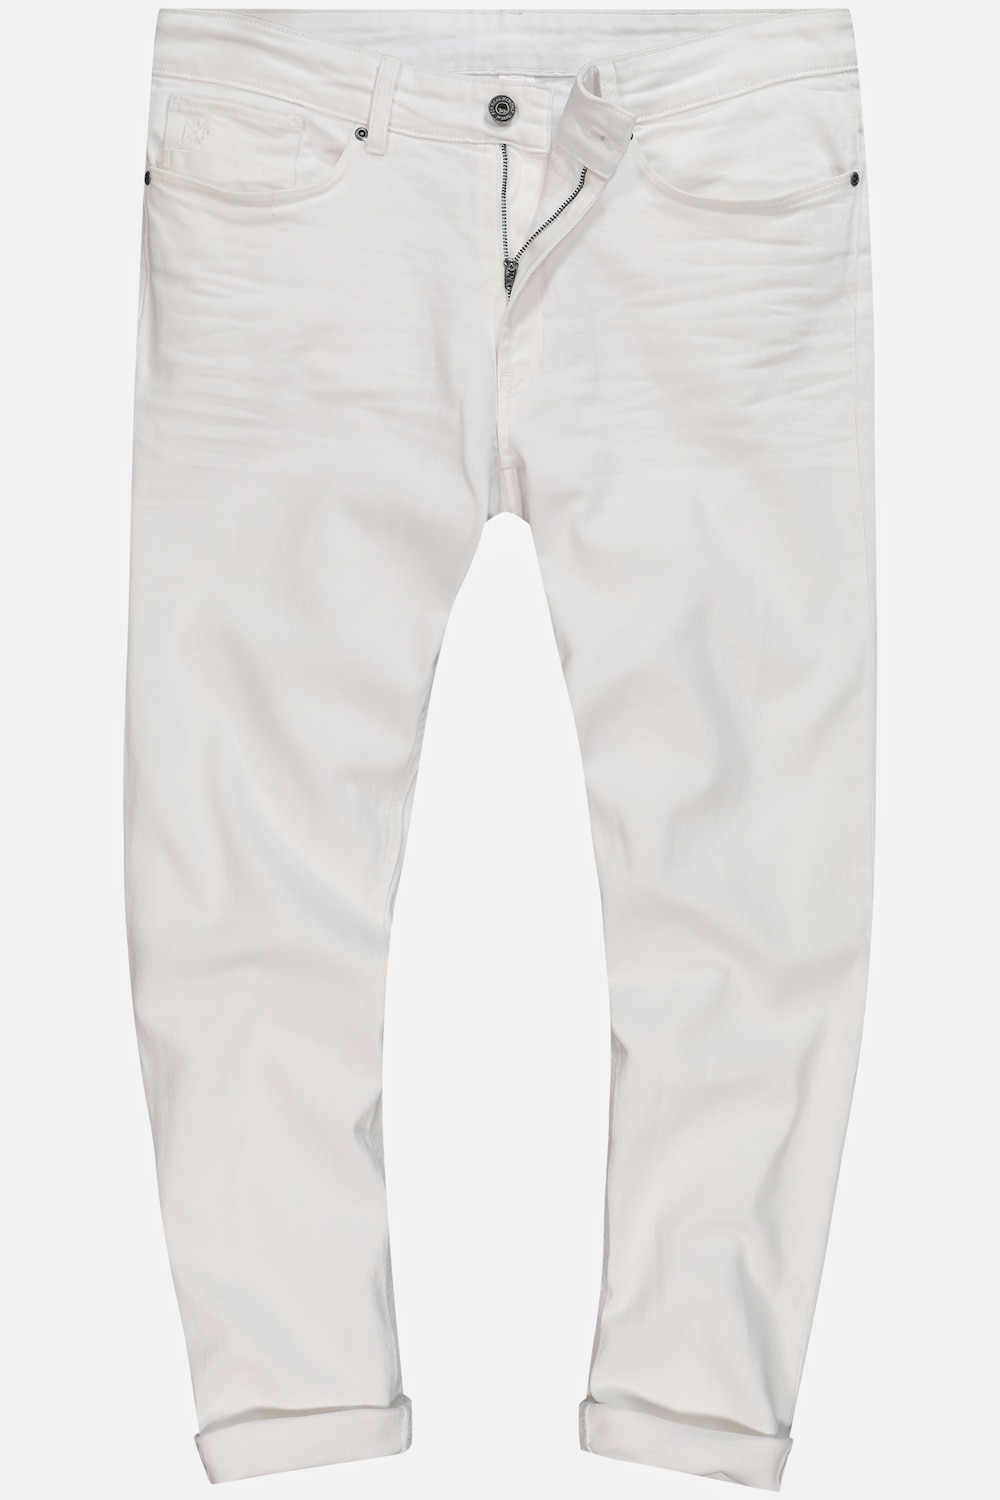 Grote Maten Jeans, Heren, wit, Maat: 130, Katoen, JP1880